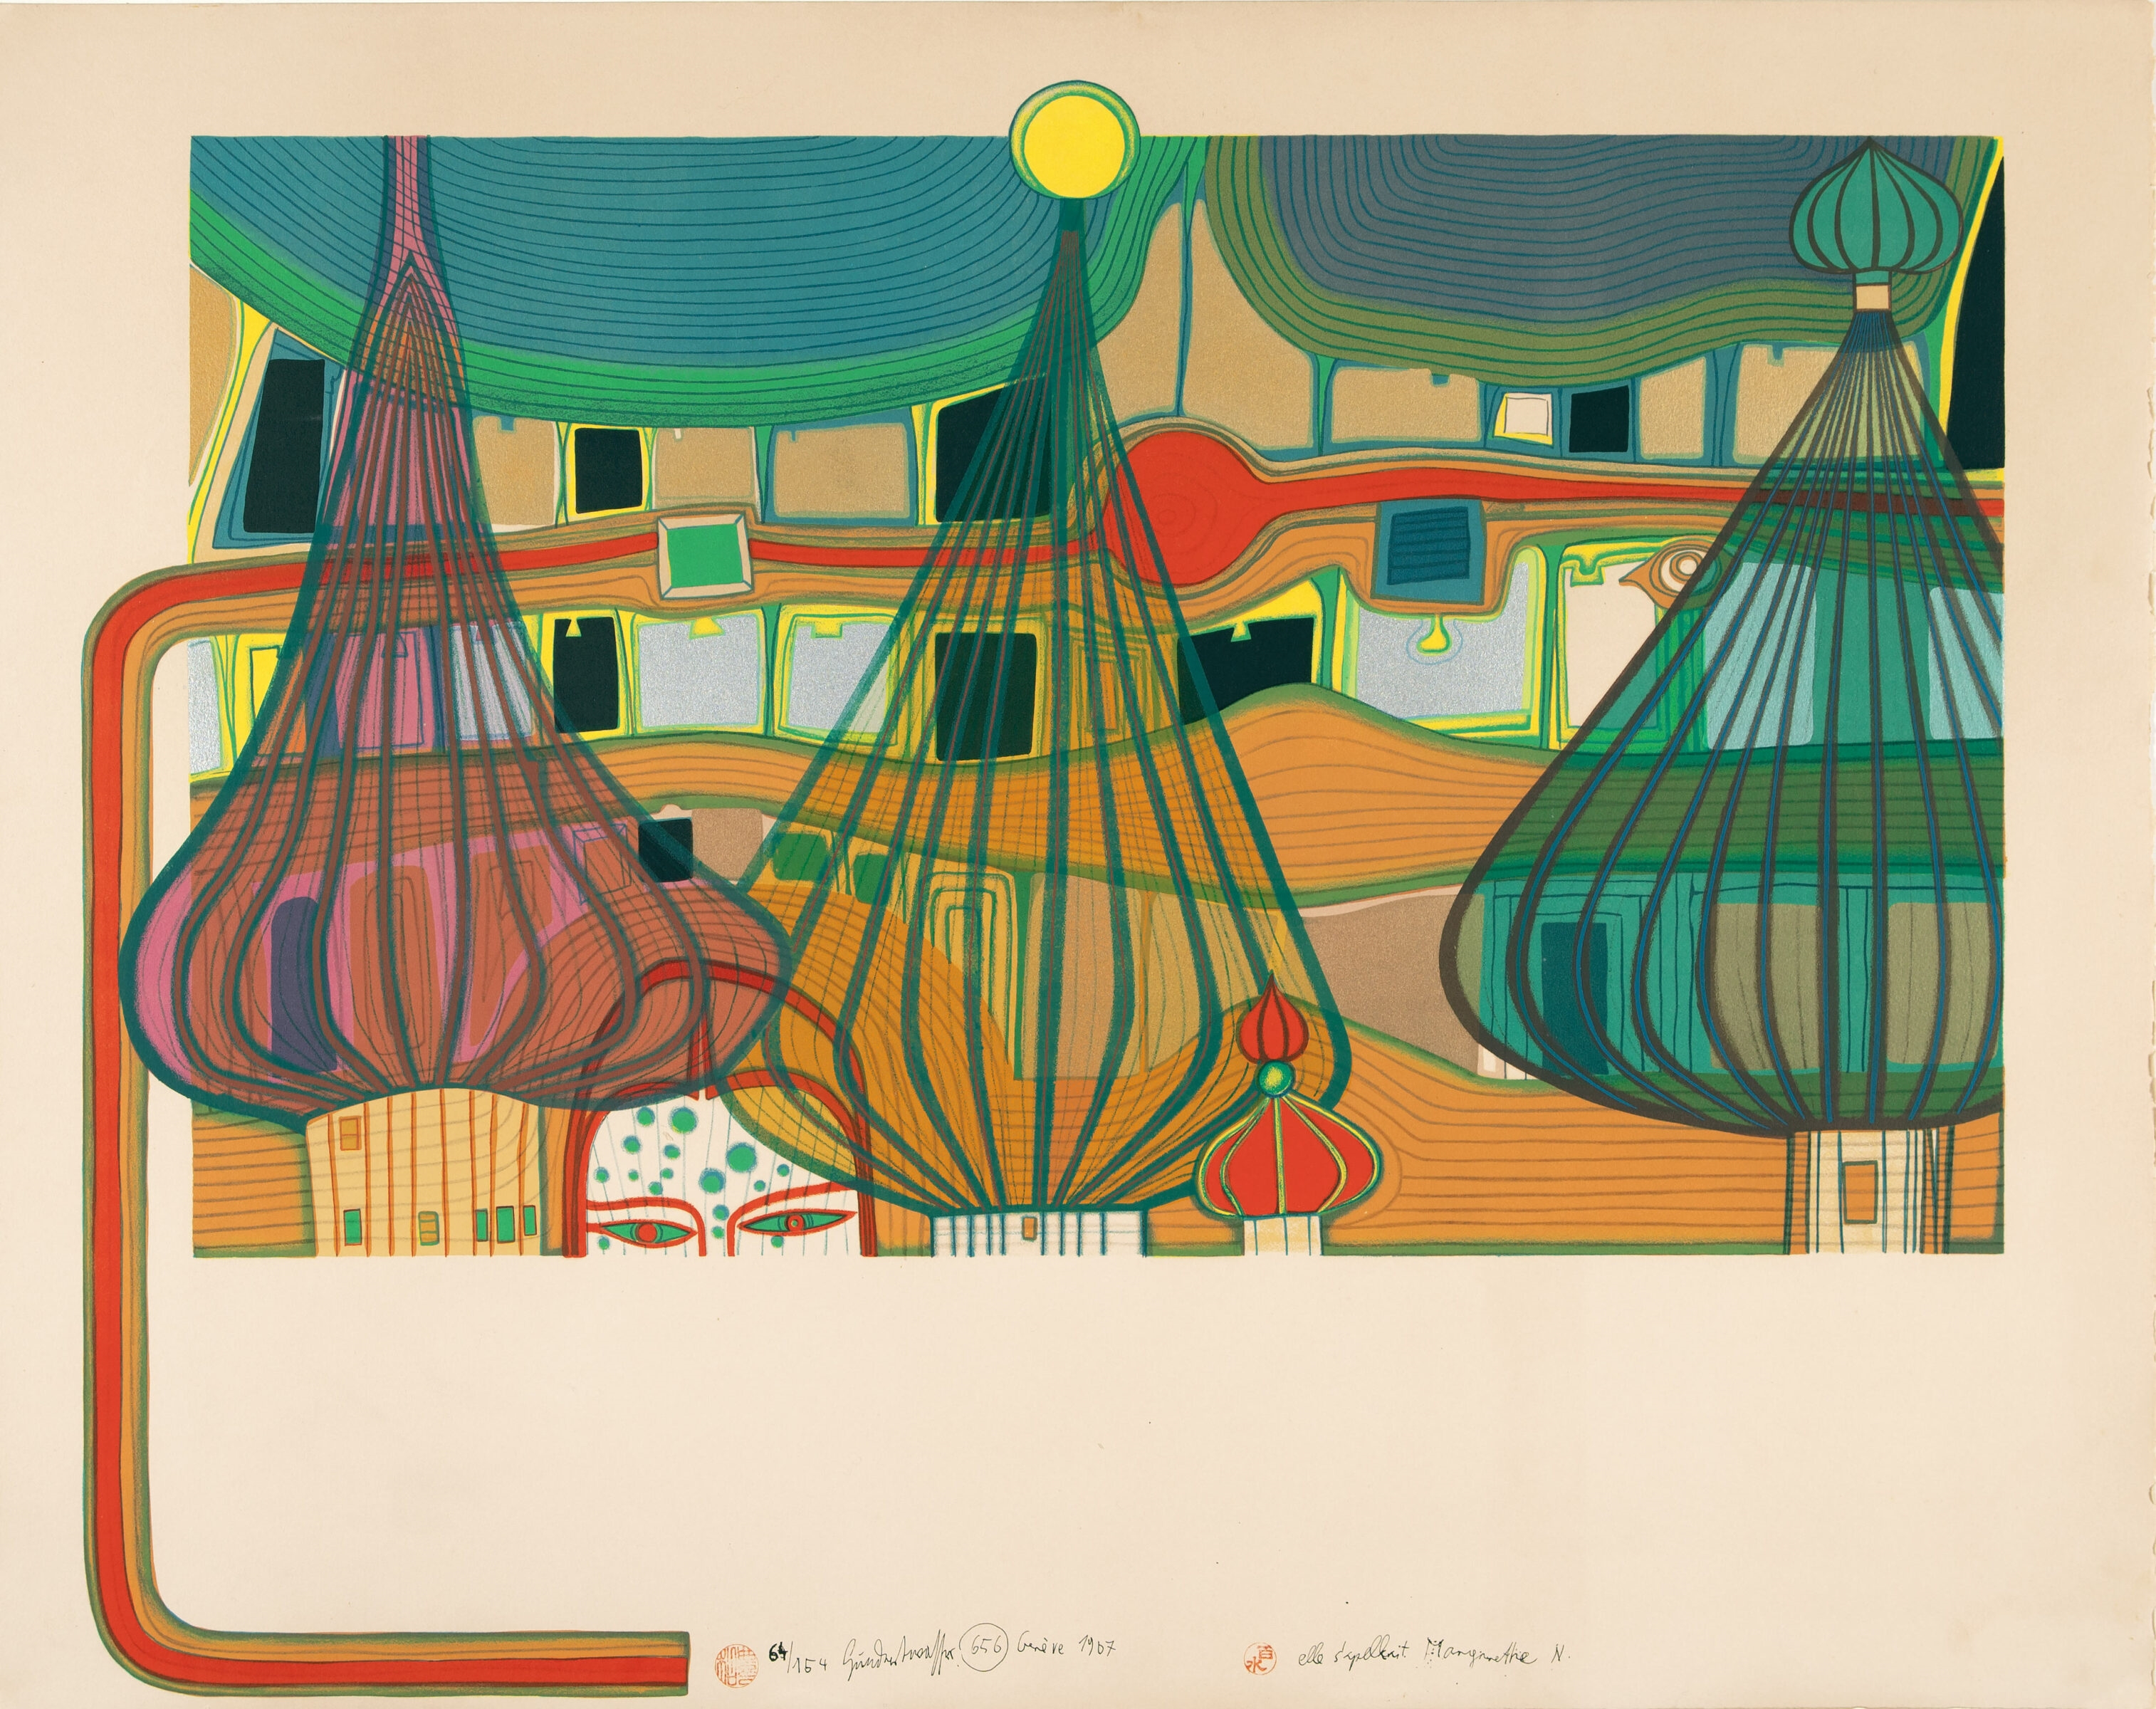 L'expulsion. Farblithographie auf chamoisfarbenem Arches Büttenkarton. 1967. 67,3 x 80 (71 x 90) cm - Friedensreich Hundertwasser